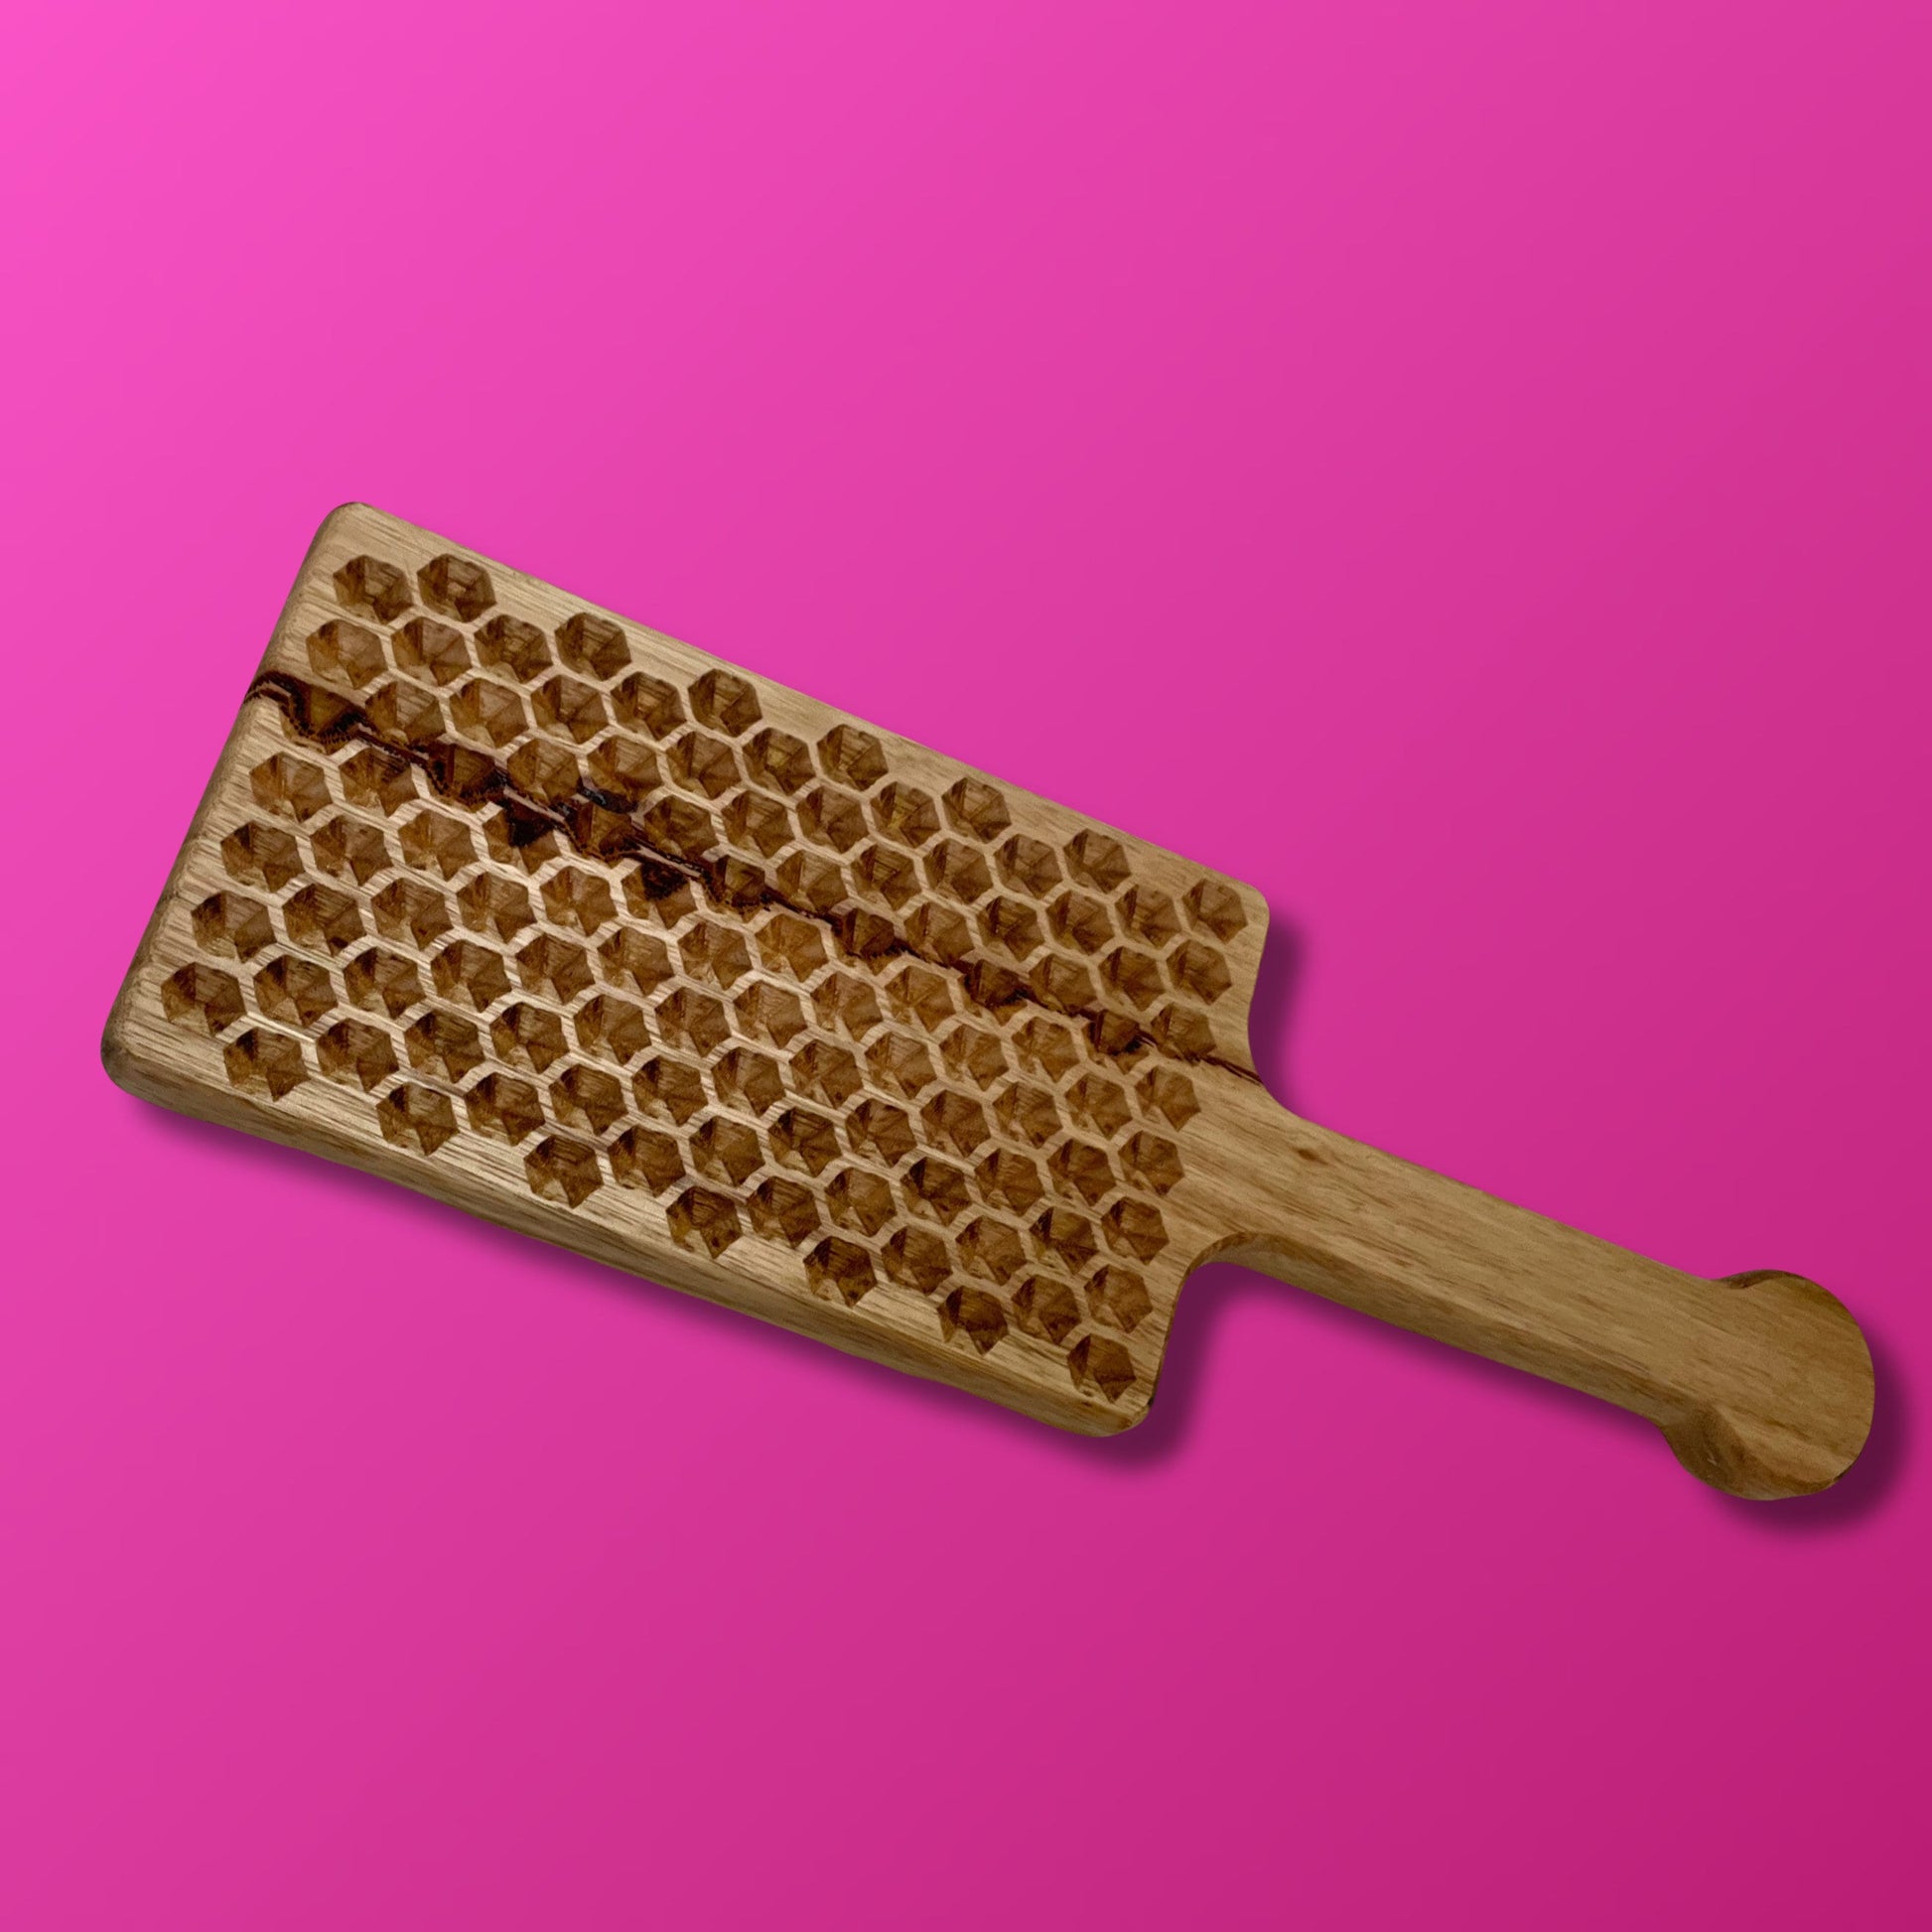 Heavy Hardwood Engraved Spanking Paddle, BDSM Toy Wooden Paddle - Honeycomb